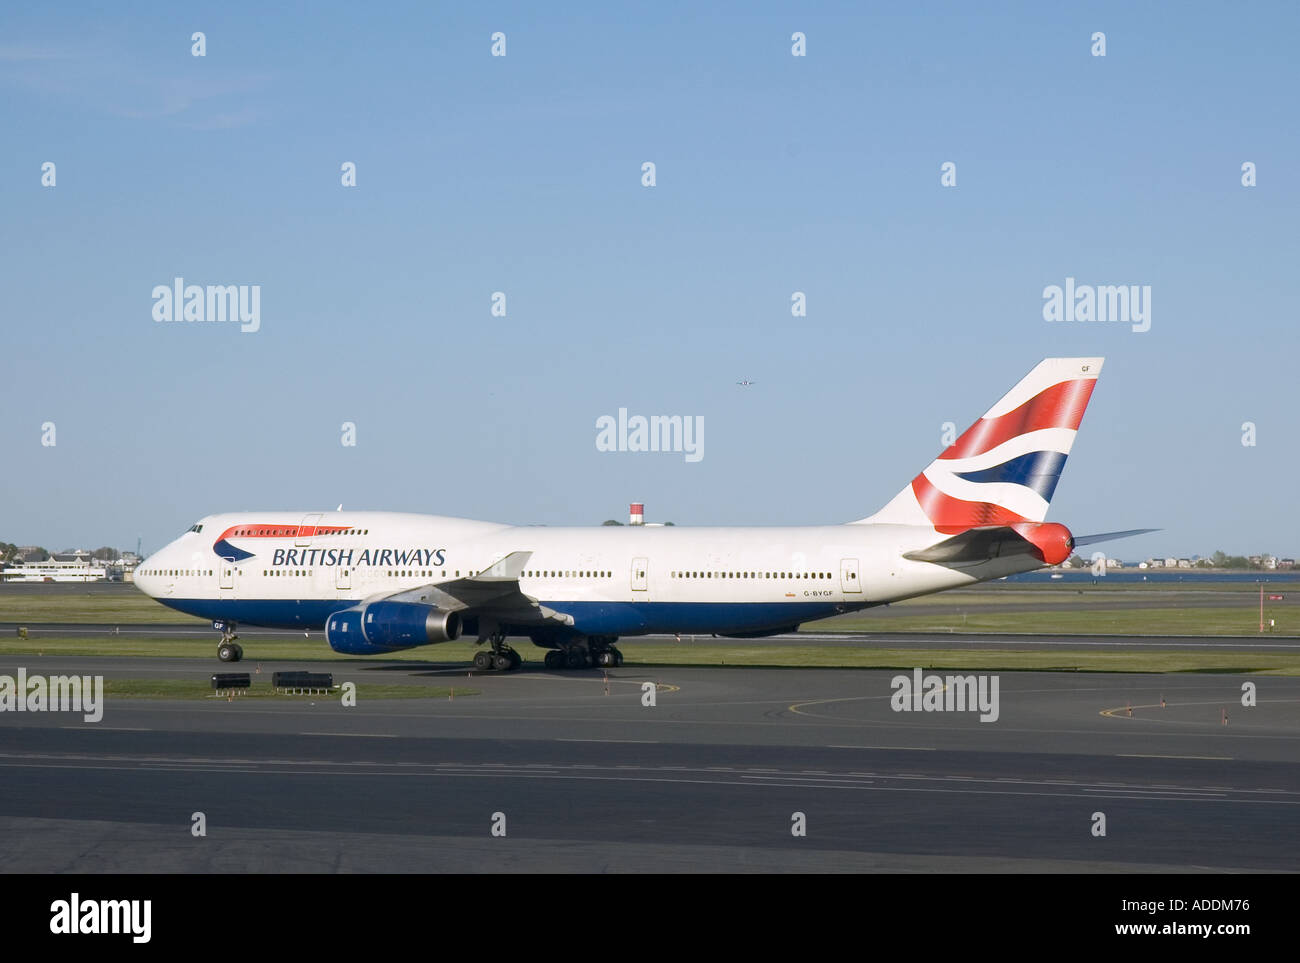 British Airways jumbo jet Stock Photo